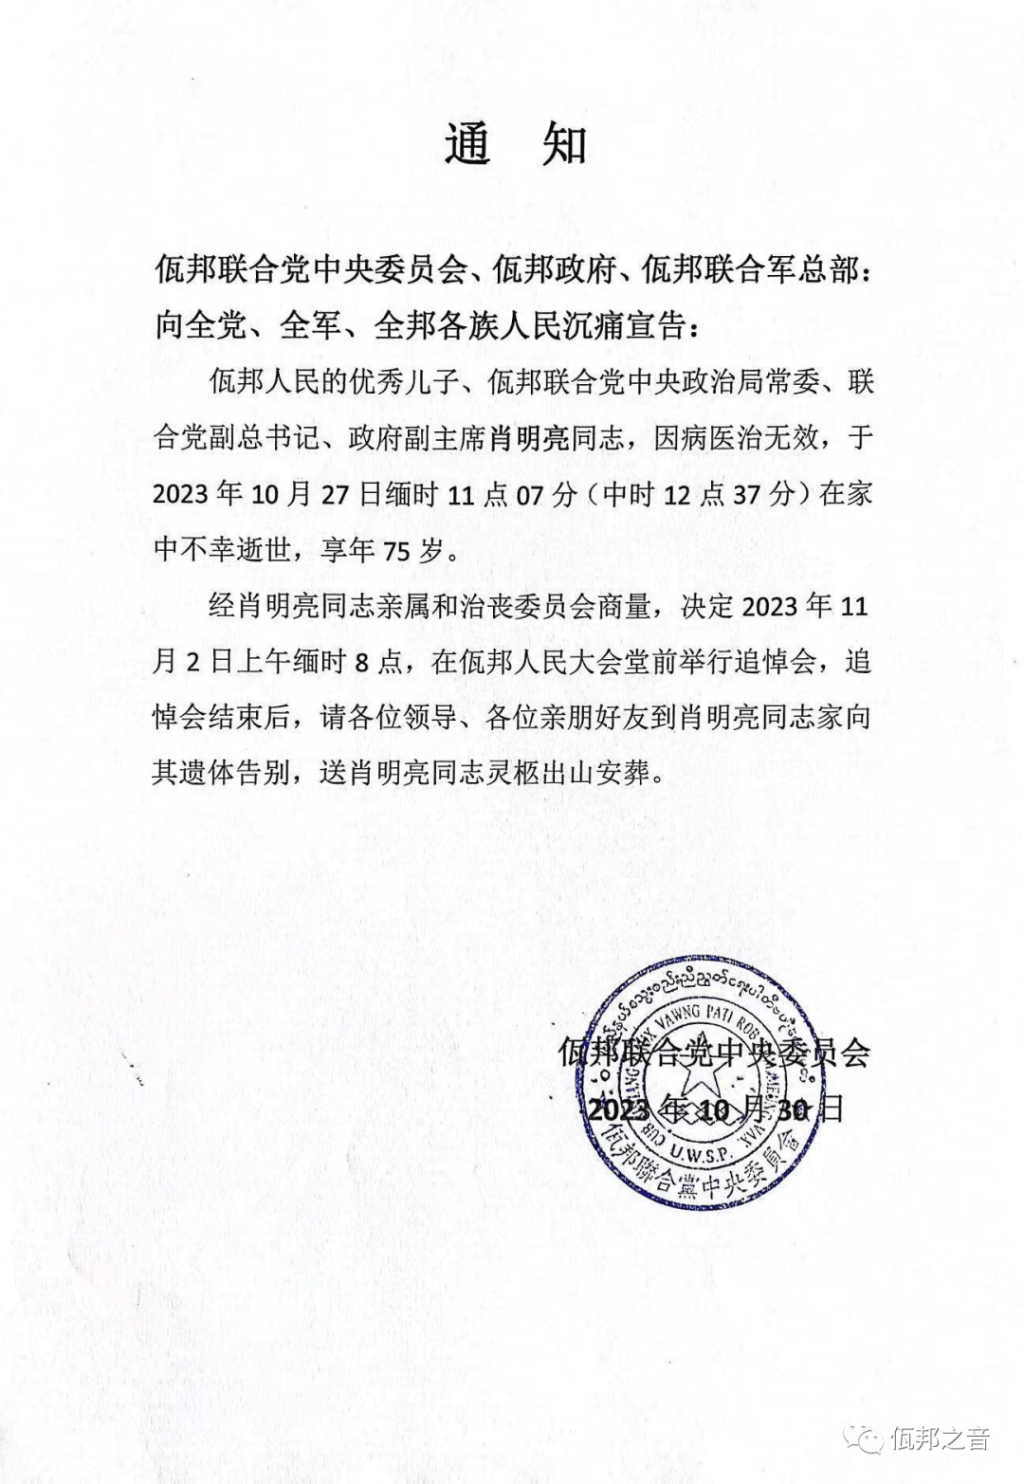 佤邦官方公布肖明亮去世的消息。